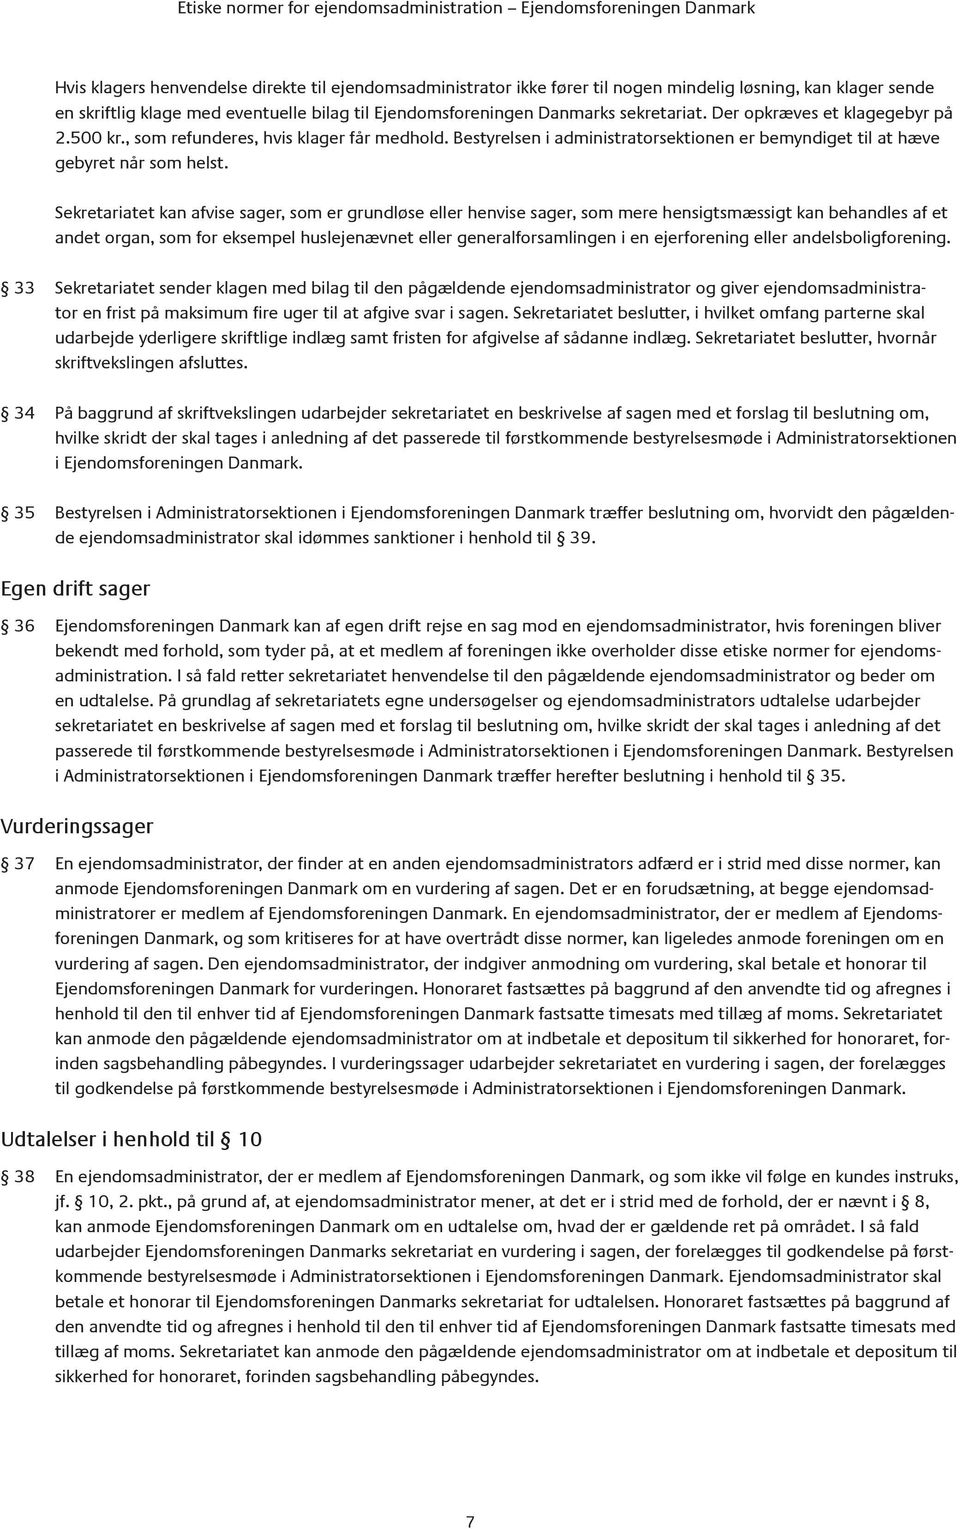 Etiske normer. for ejendomsadministration EJENDOMSFORENINGEN DANMARK - PDF  Free Download